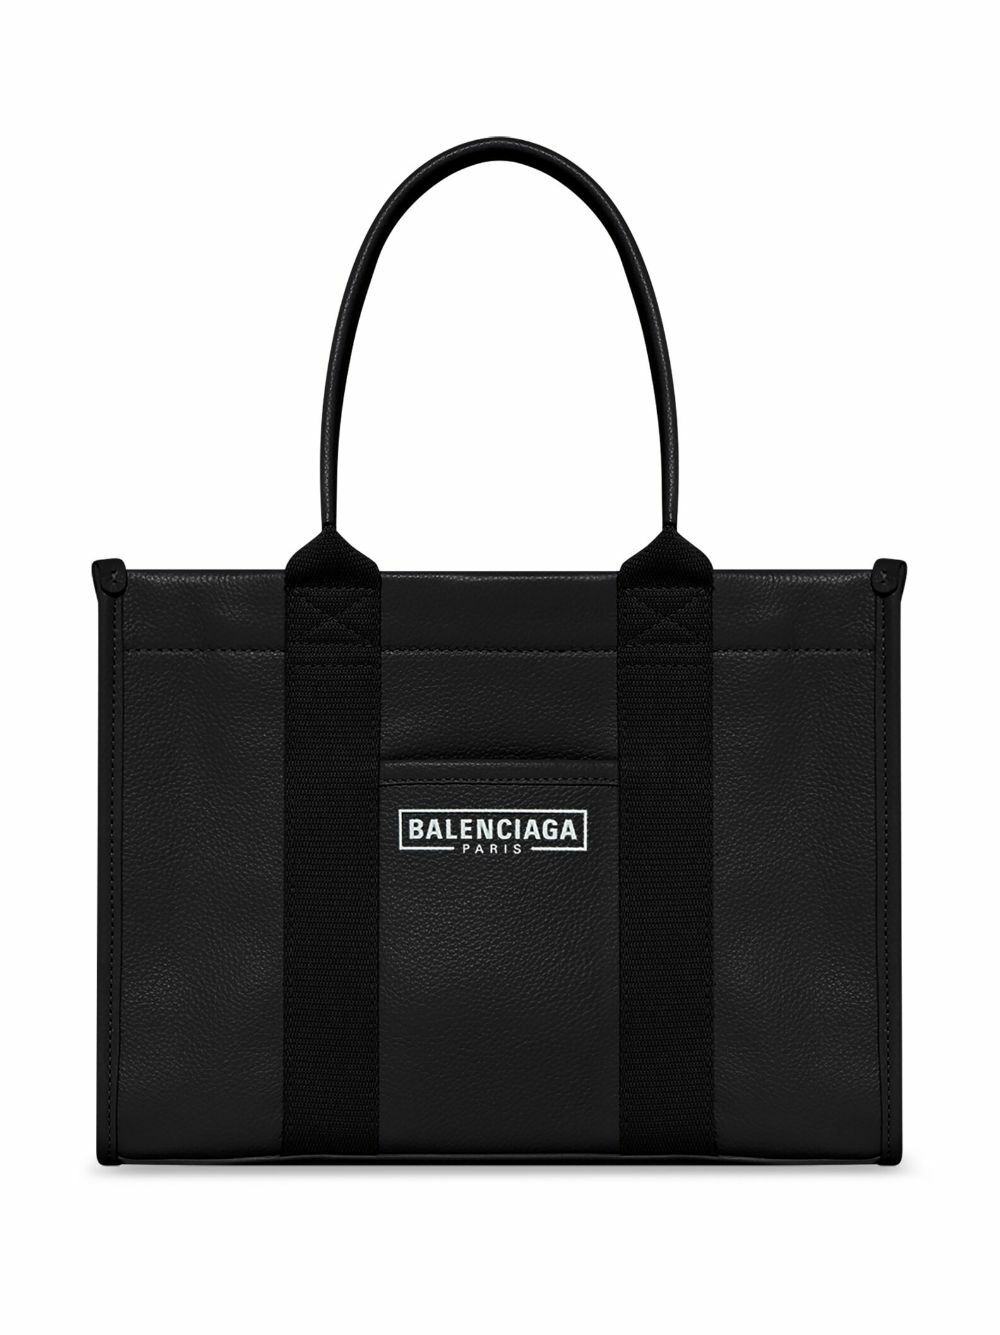 BALENCIAGA - Hardware Small Leather Tote Bag Balenciaga